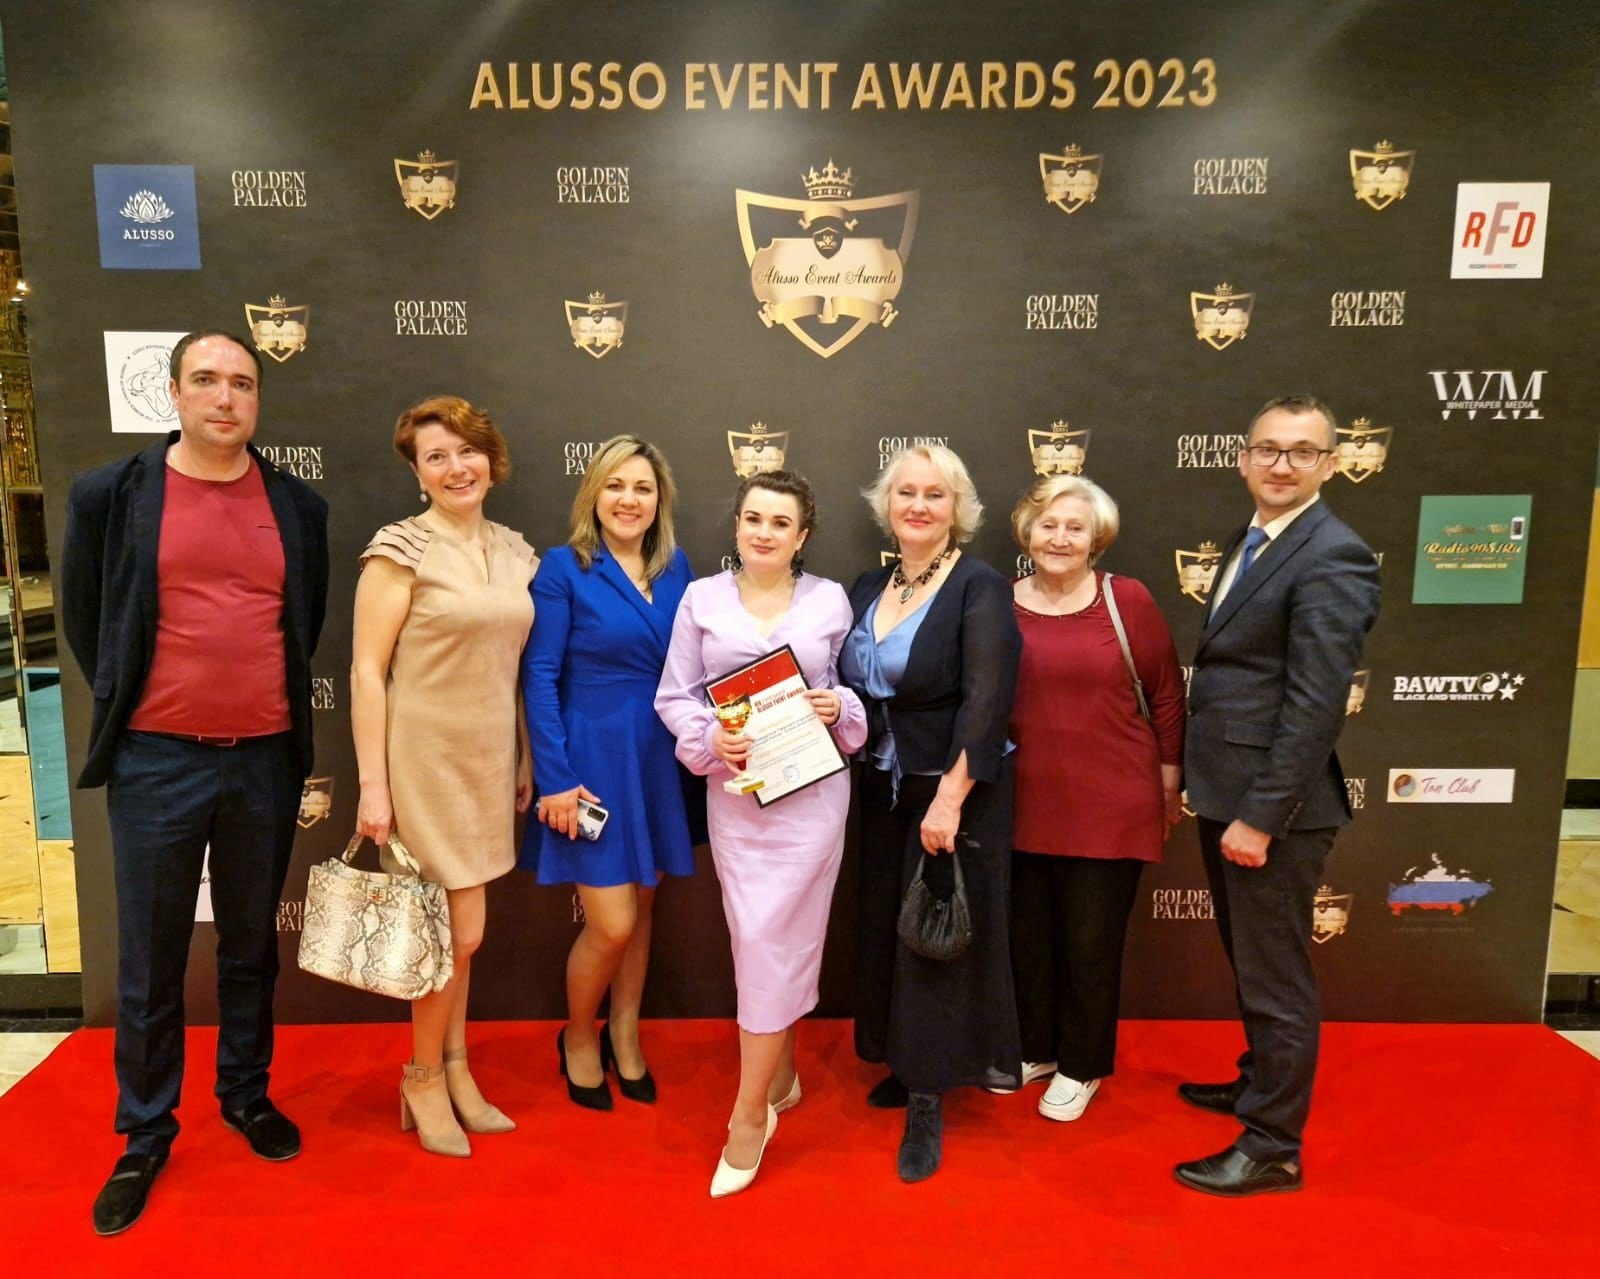 XIV Всероссийская и Европейская премия Всероссийская Премия ALUSSO EVENT AWARDS EVENT AWARDS - 2023